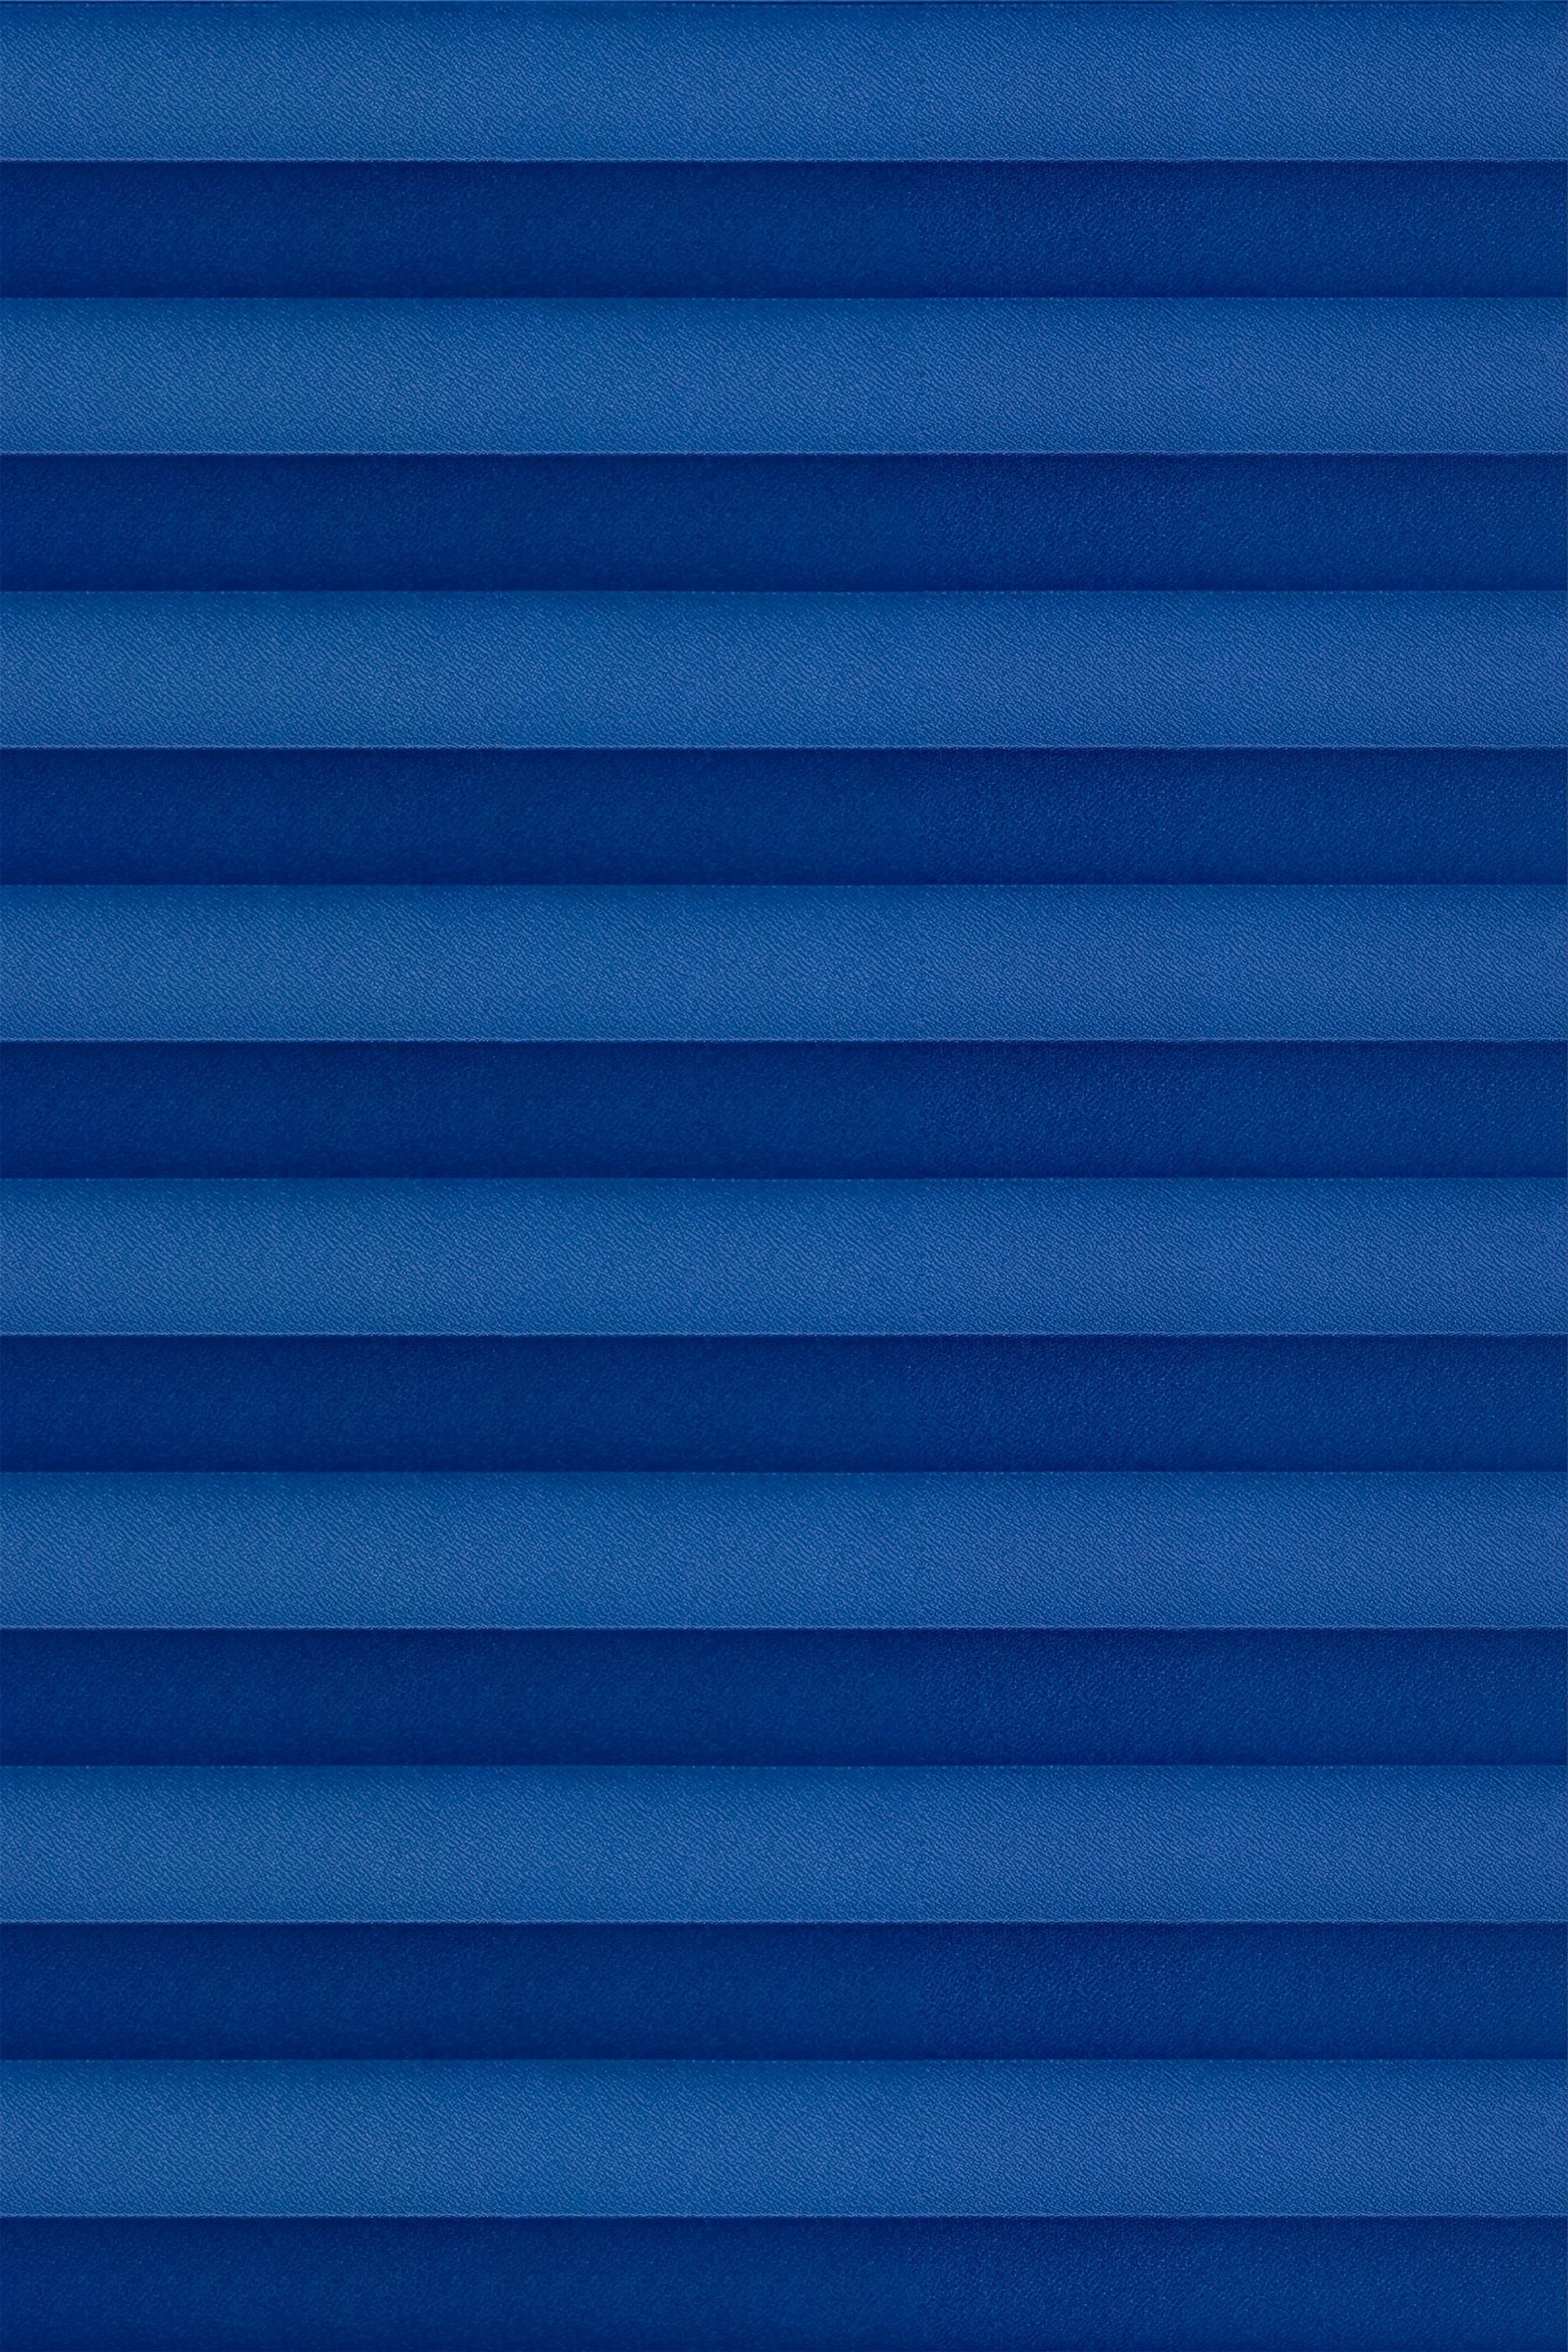 Plissee freihängend Enzianblau, LYSEL®, blickdicht, HxB 180x120cm